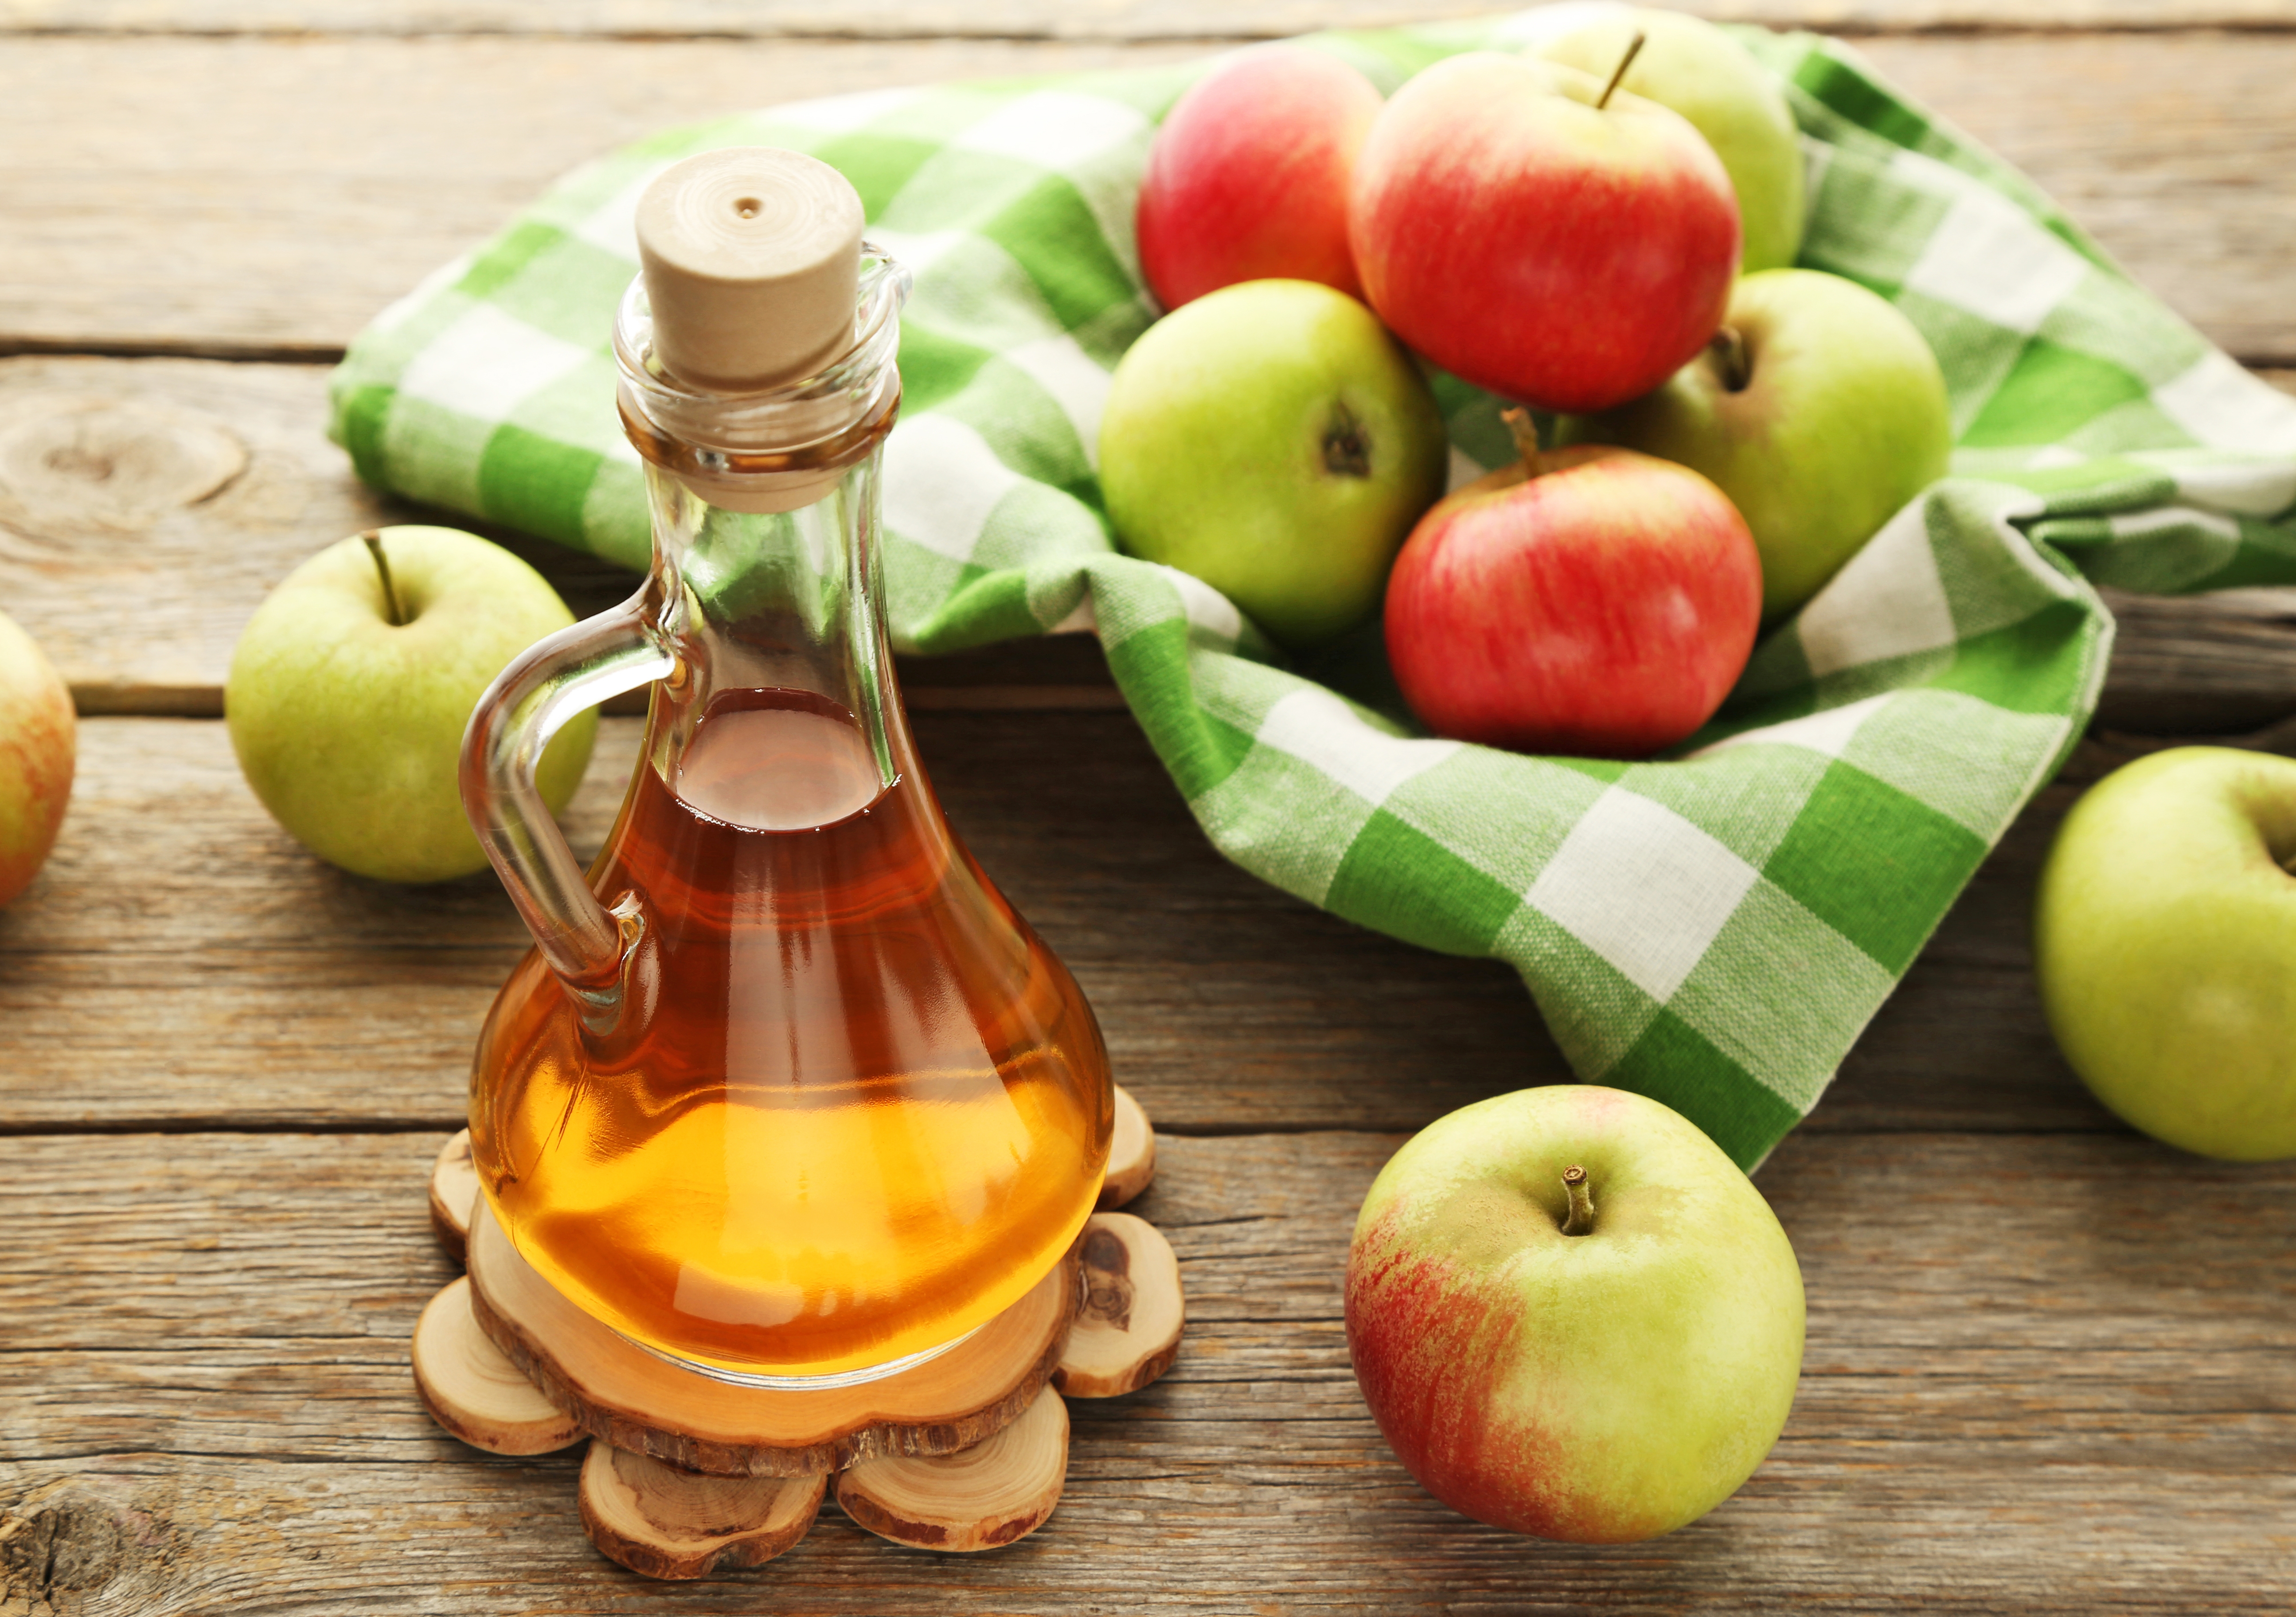 Тест яблочным уксусом. Яблочный уксус Elma Sirkesi. Яблочный уксус Apple Vinegar. Яблочный уксус в стеклянной бутылке. Яблочный уксус картинки.